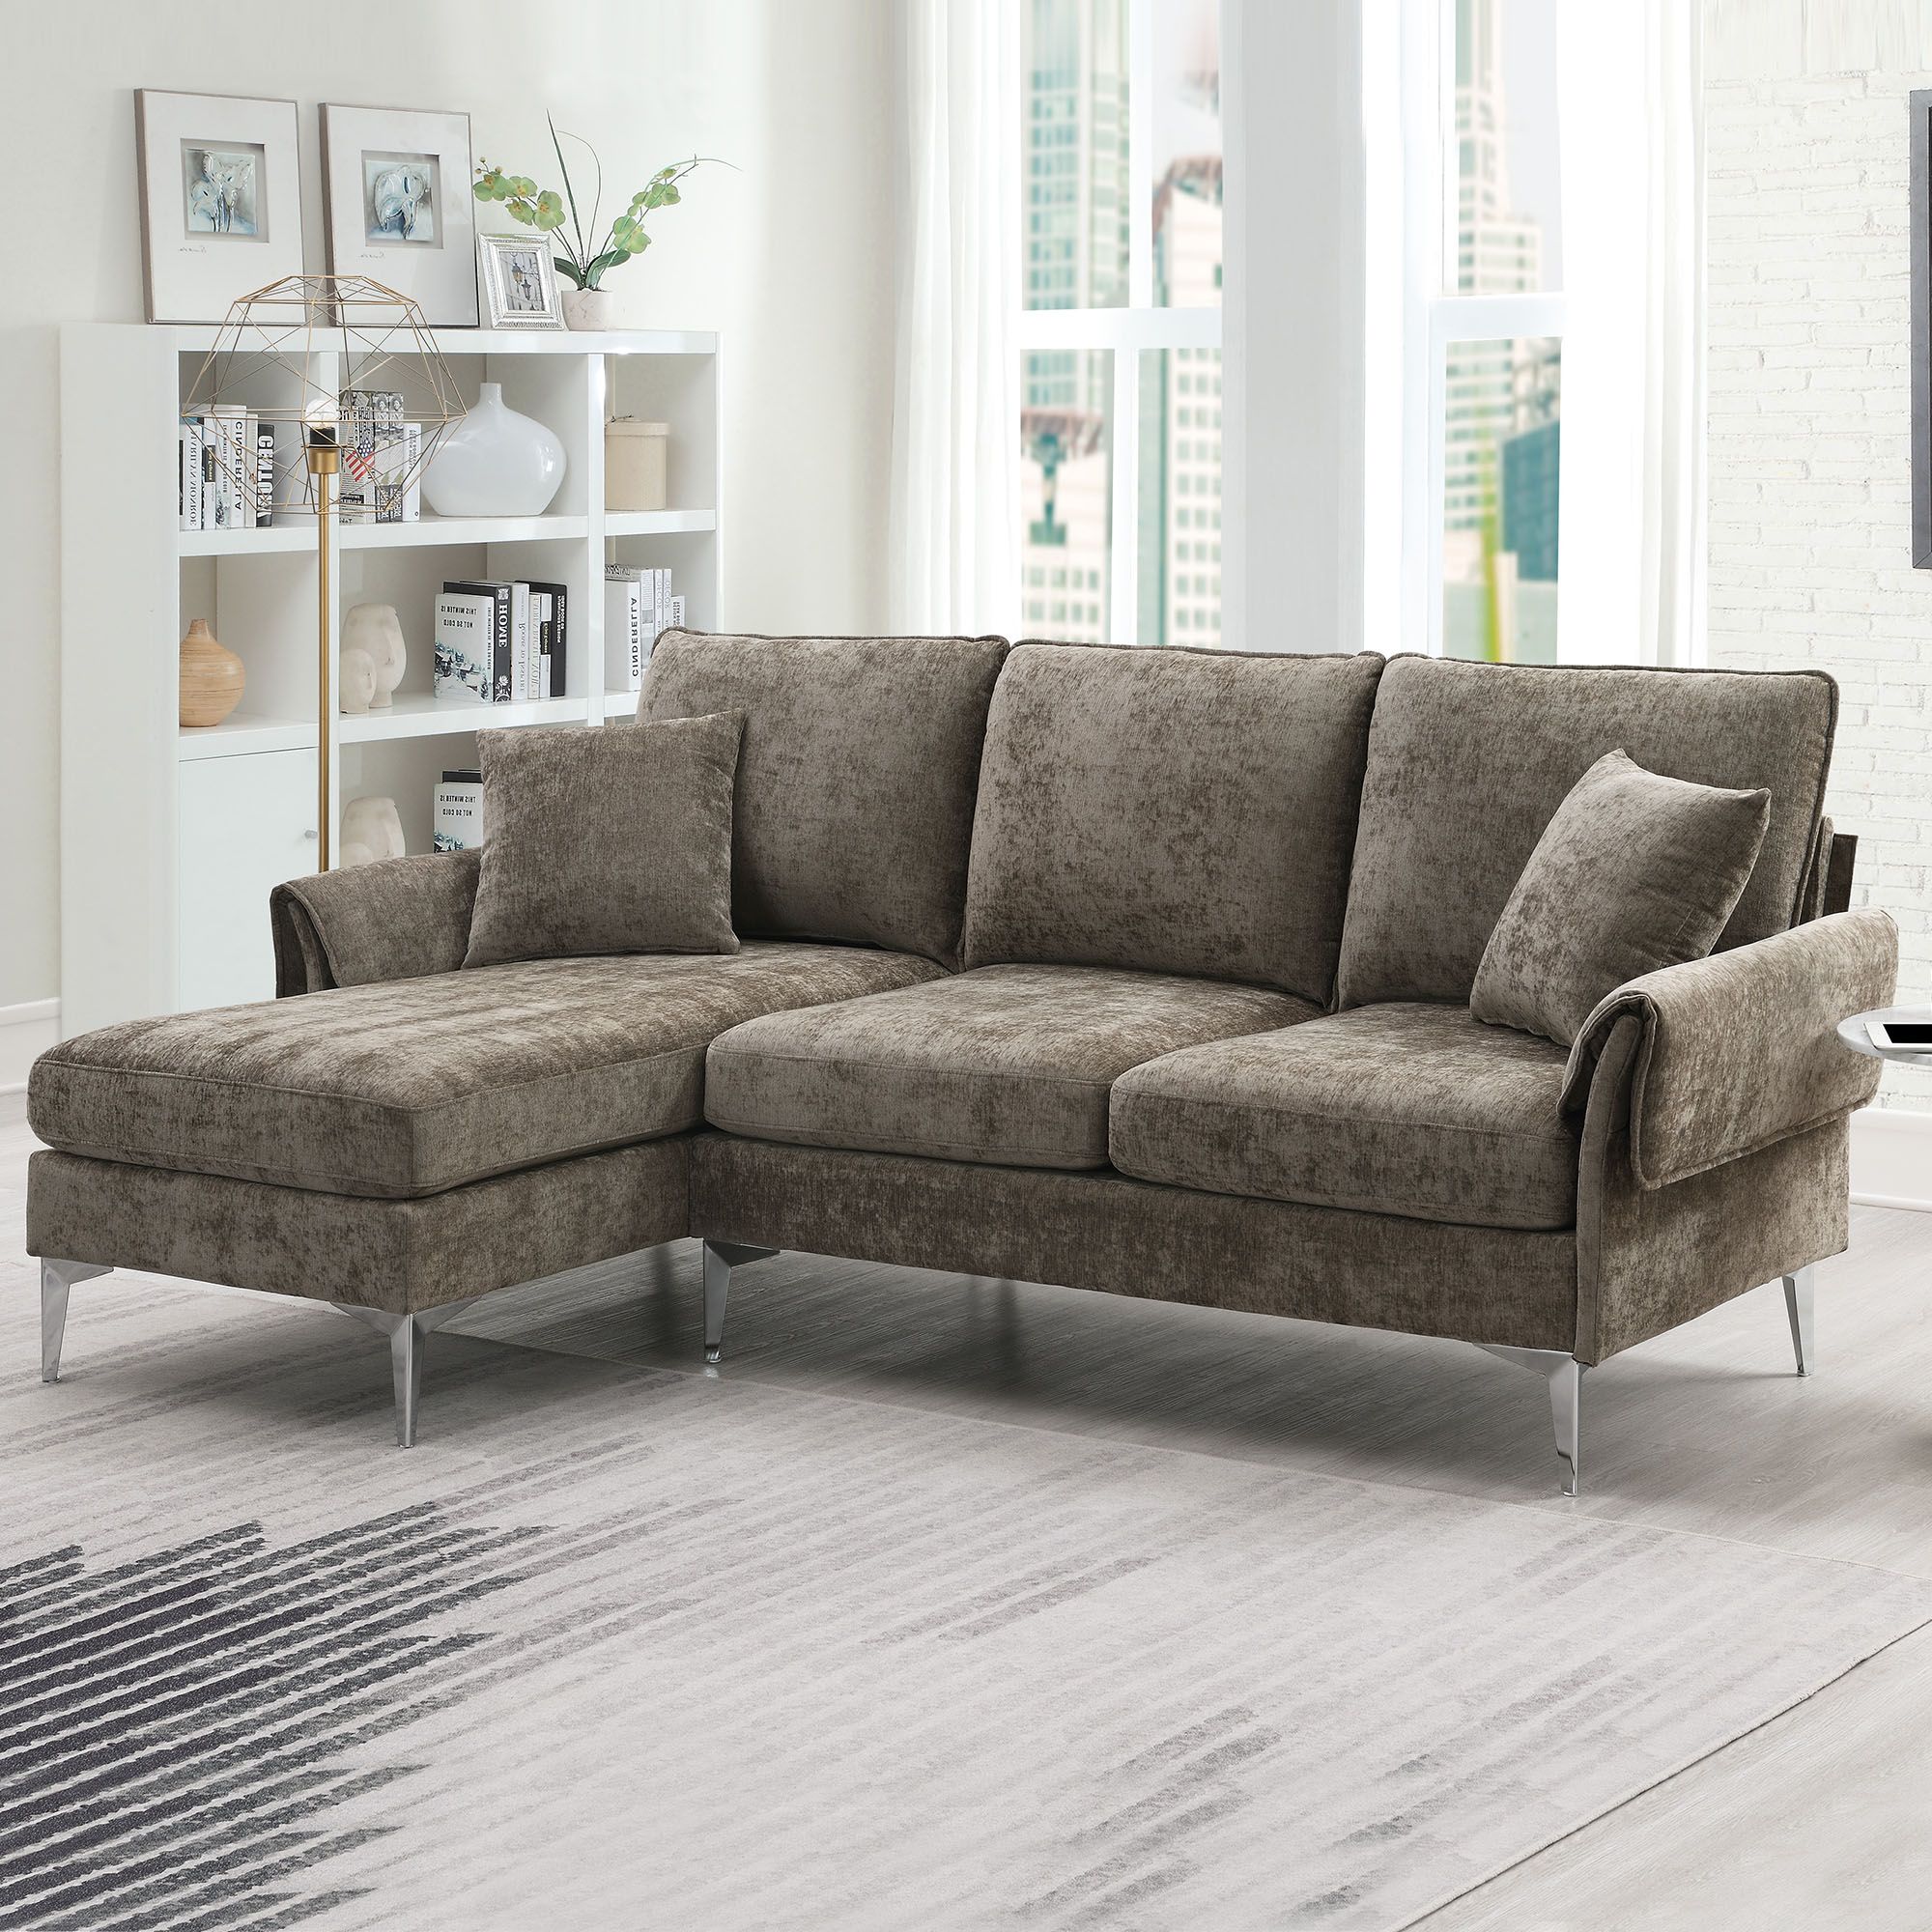 Nestfair 87.4 in. Beige Linen Upholstered L-Shaped Sleeper Sofa